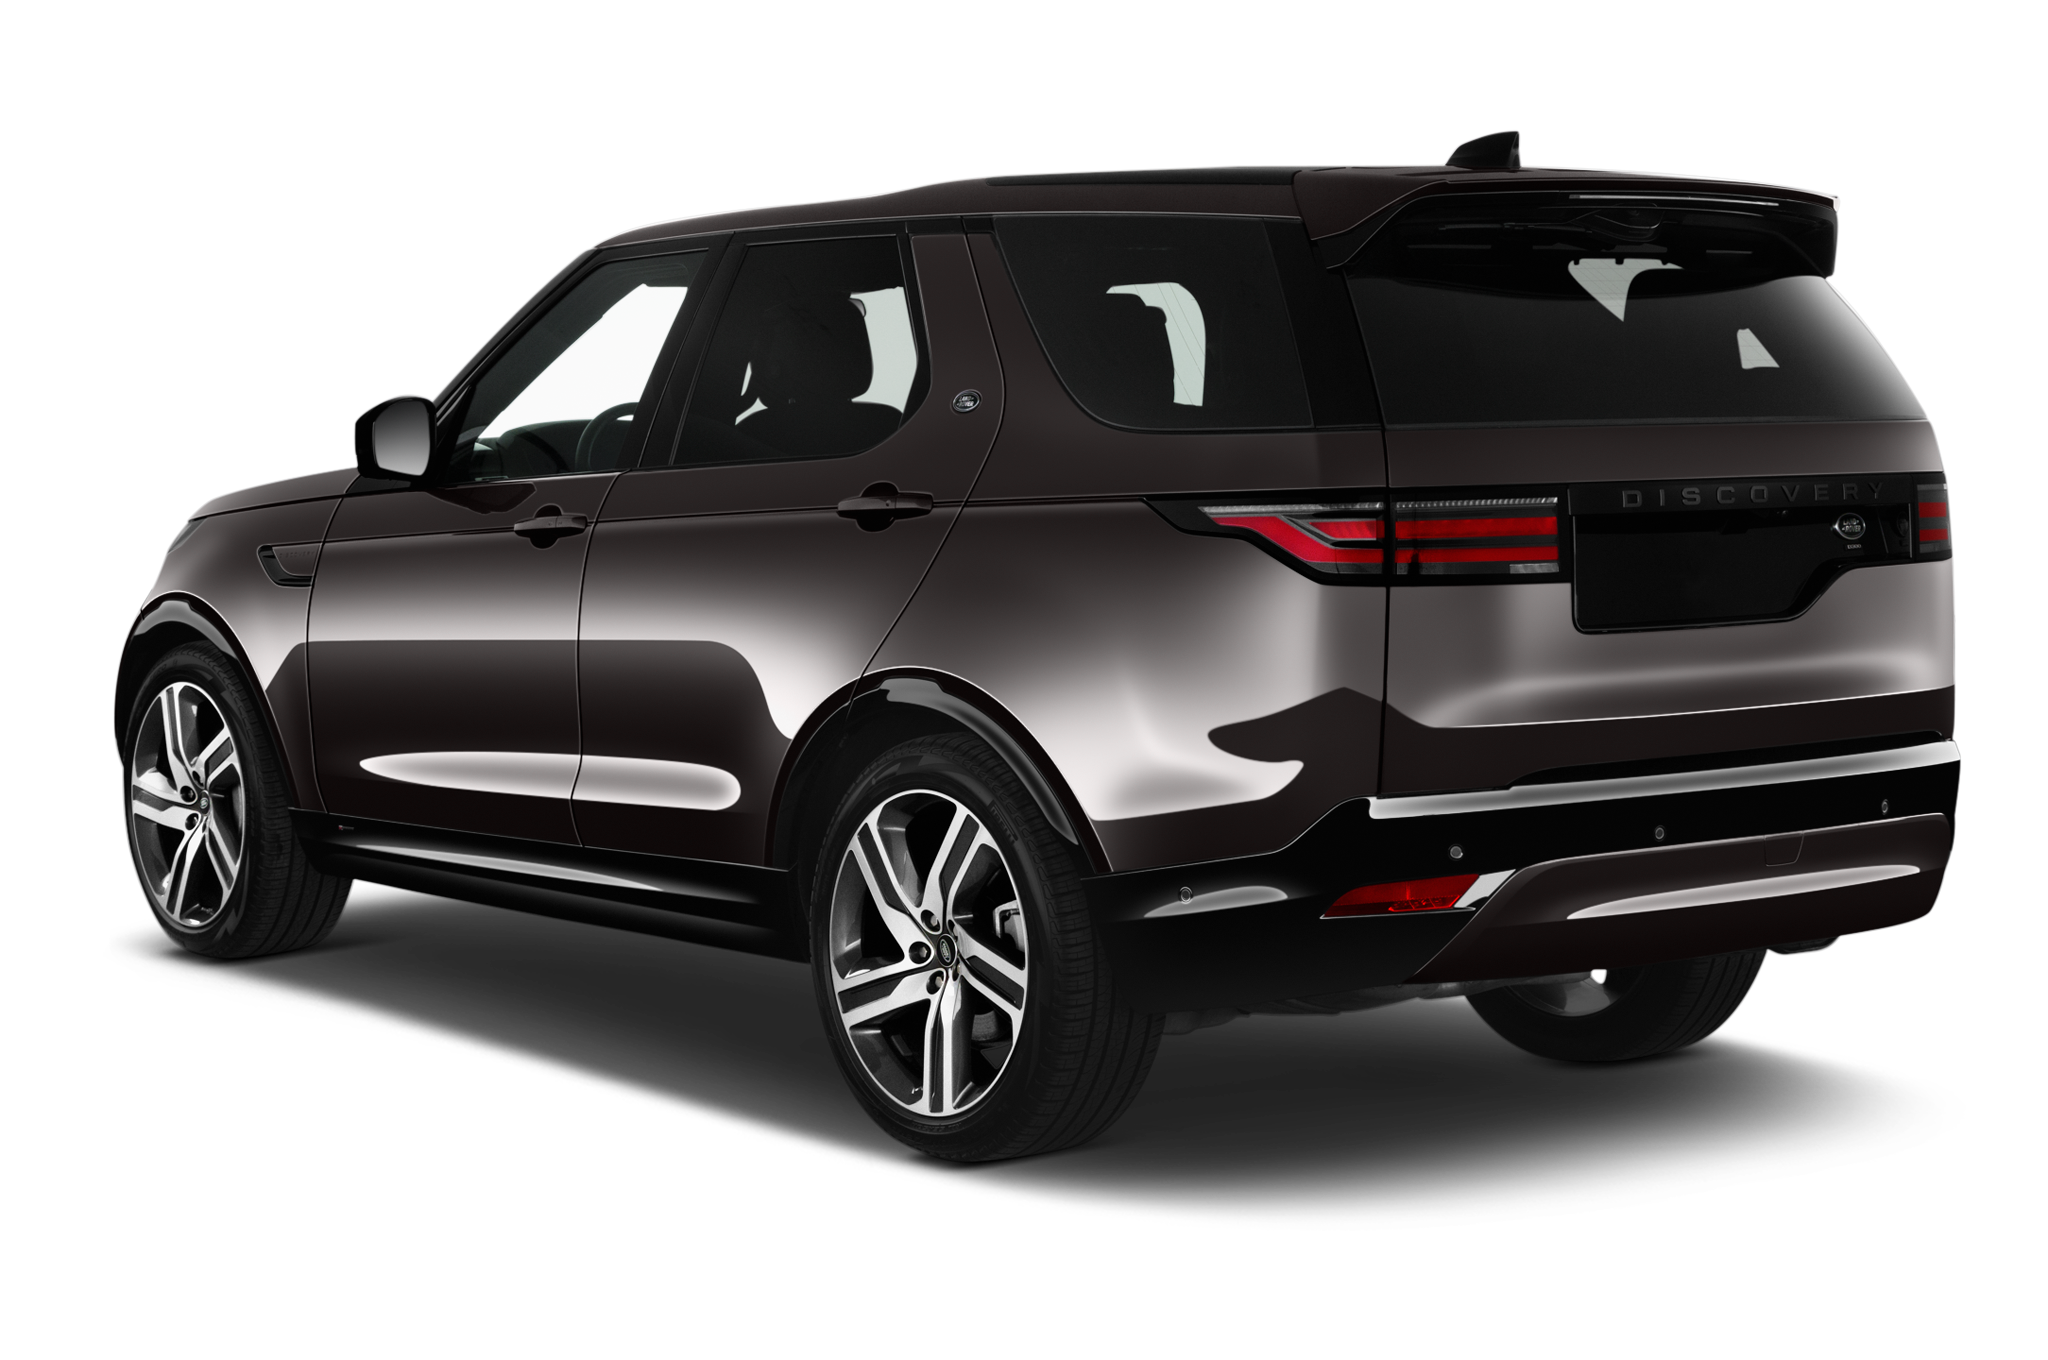 Land Rover Discovery (Baujahr 2021) R Dynamic HSE 5 Türen seitlich hinten